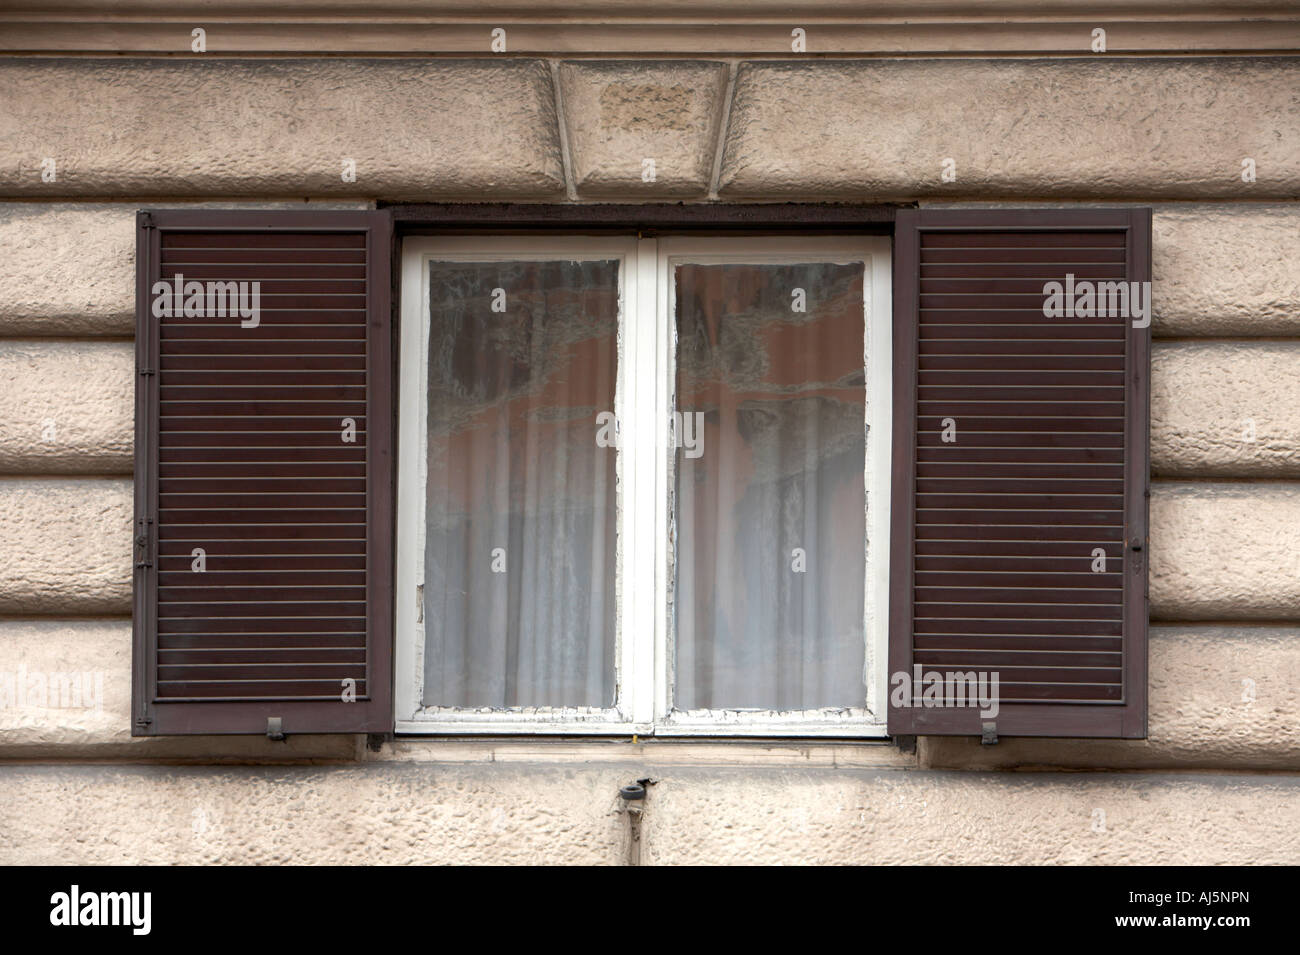 Vieille fenêtre à volets et volets marron avec armatures blanc Rome Lazio Italie Banque D'Images